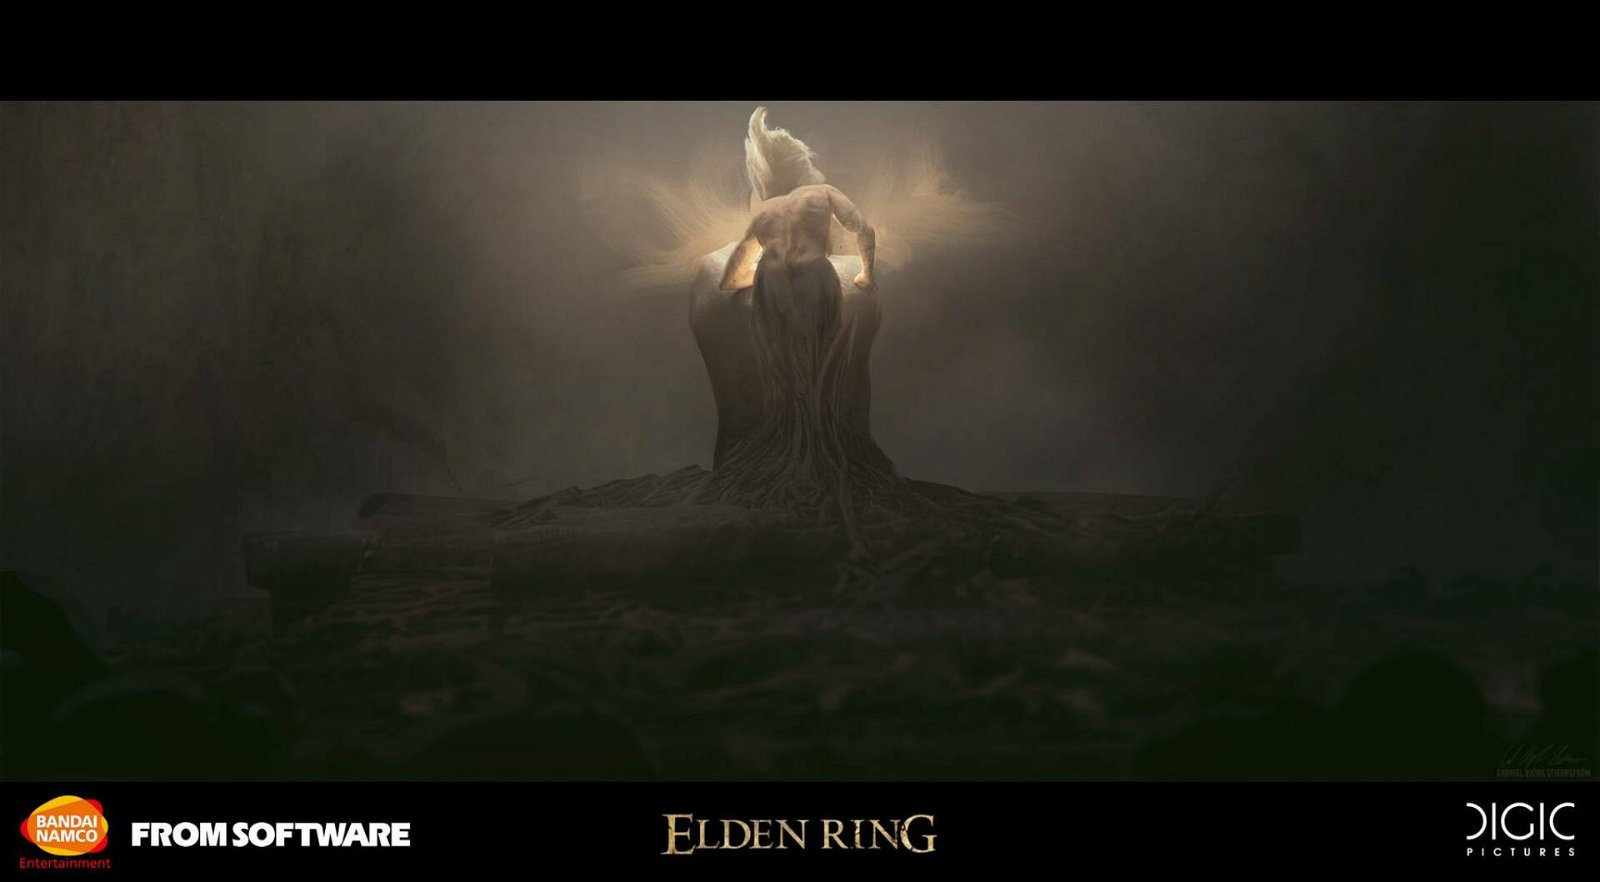 Immagine di Elden Ring, disponibile la patch 1.02.1